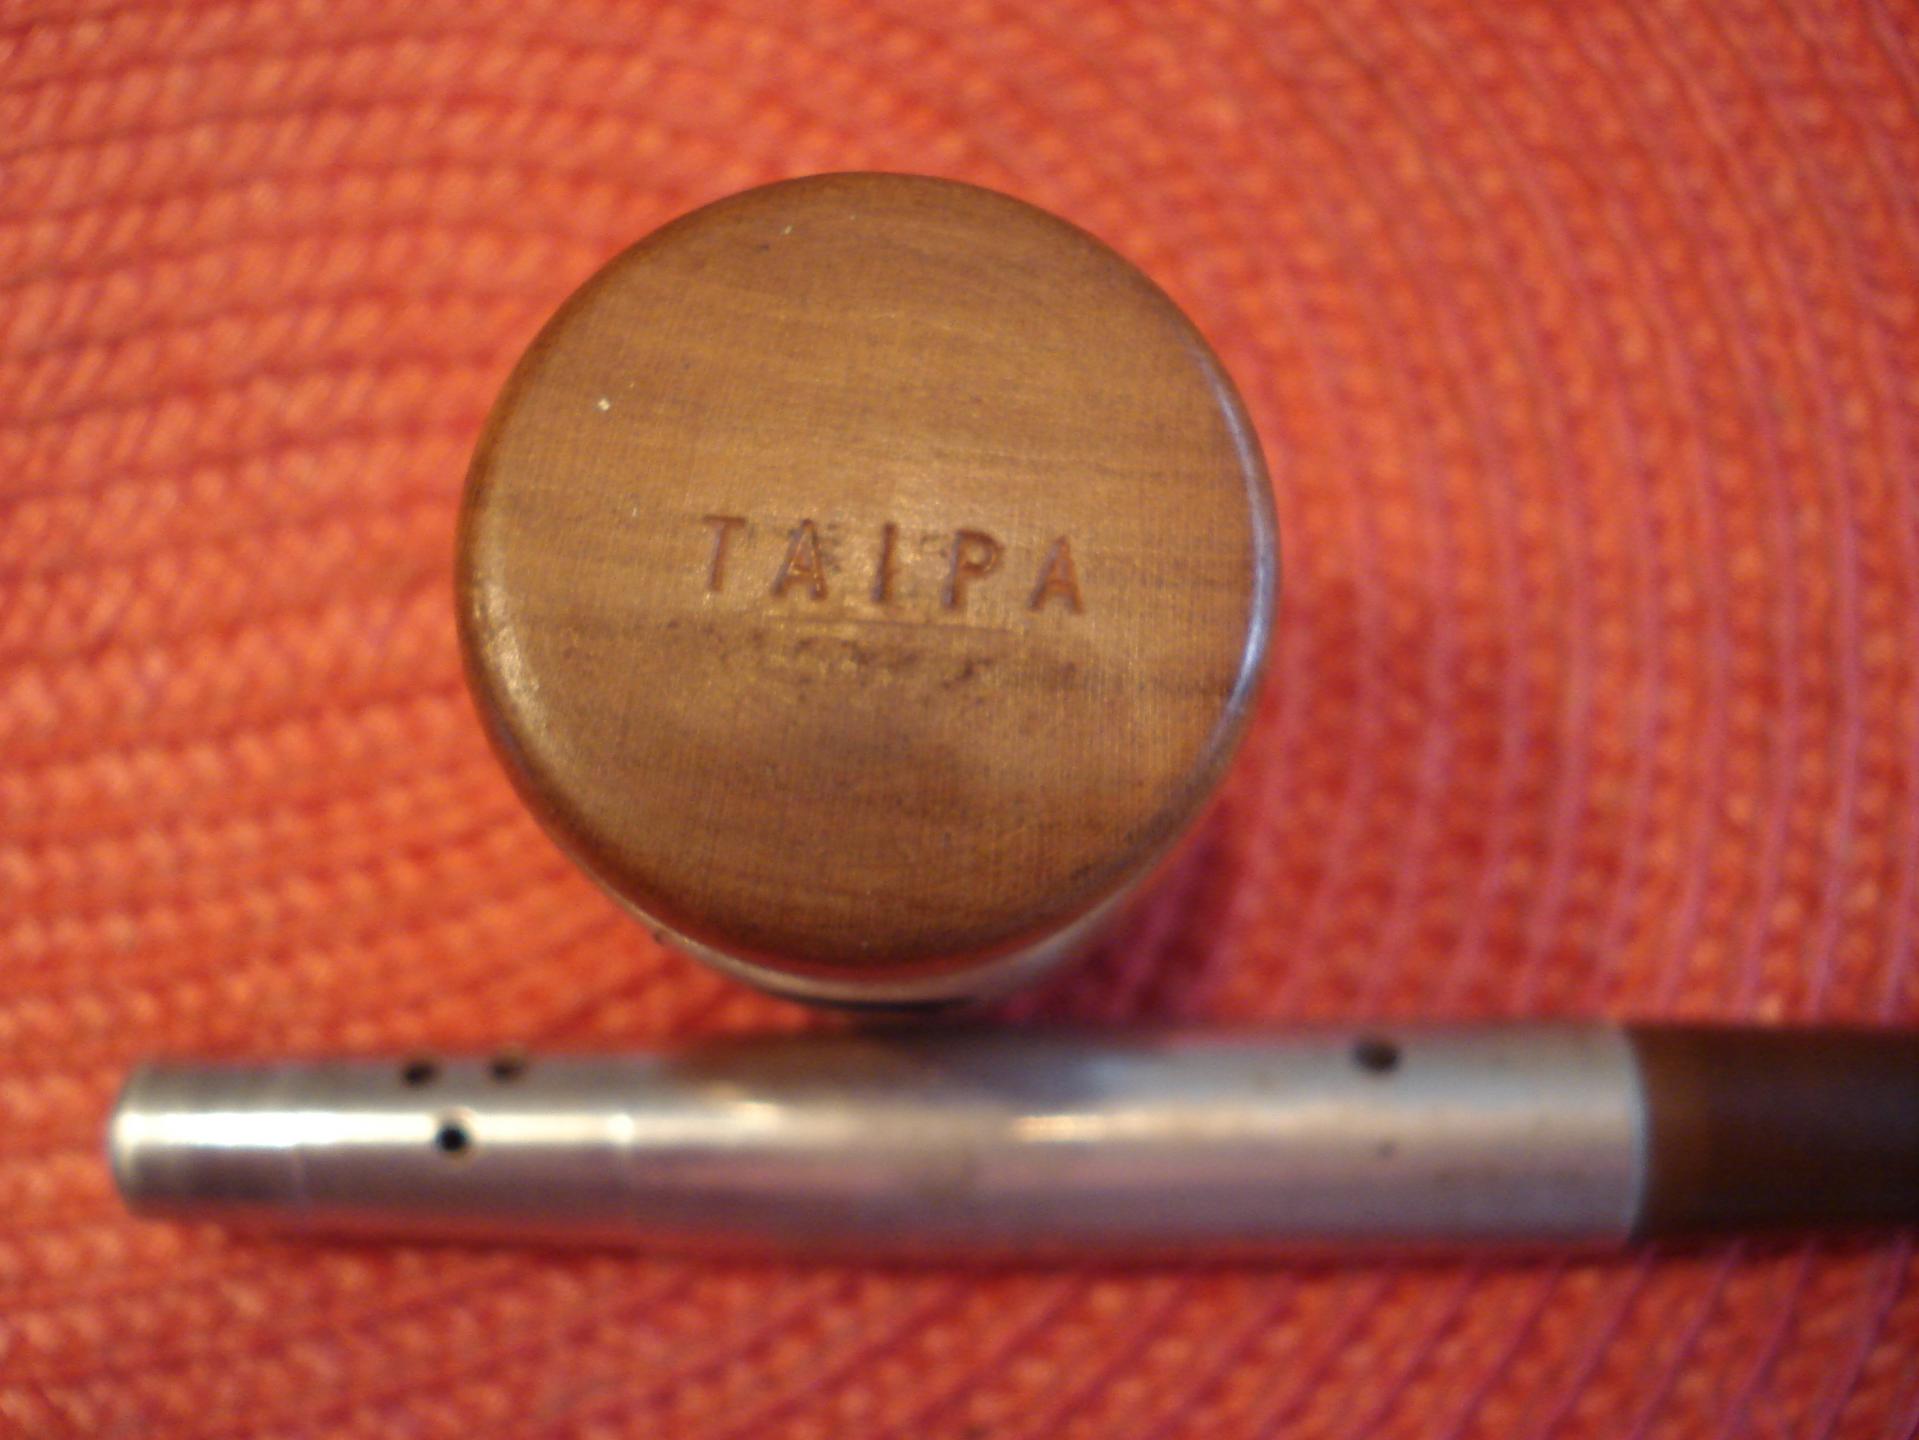 Taipa piece